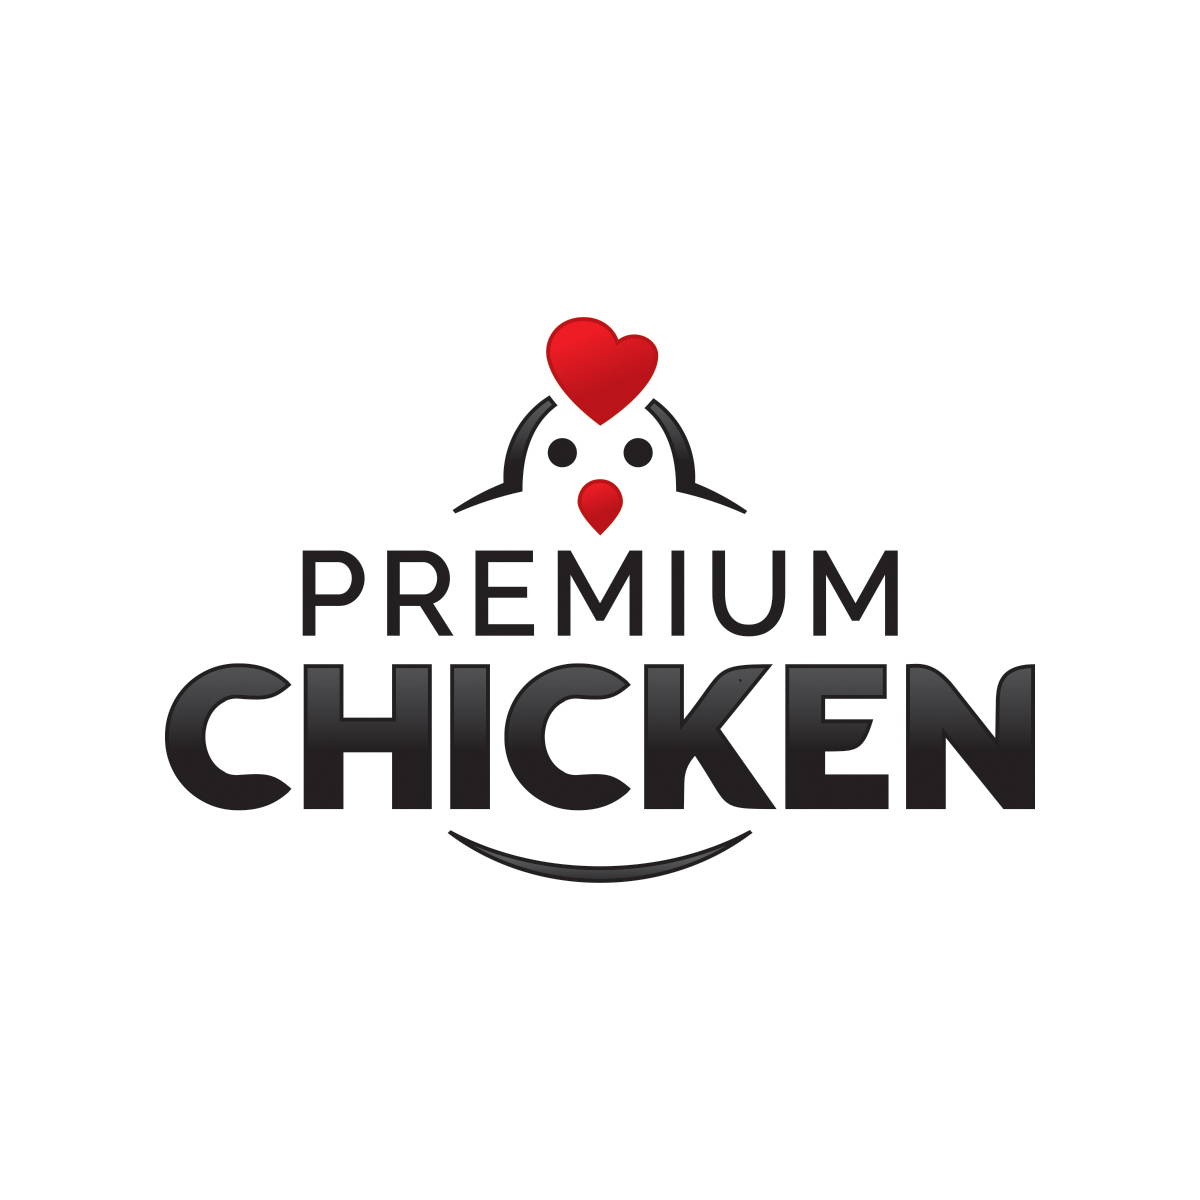 Premium Chicken logo